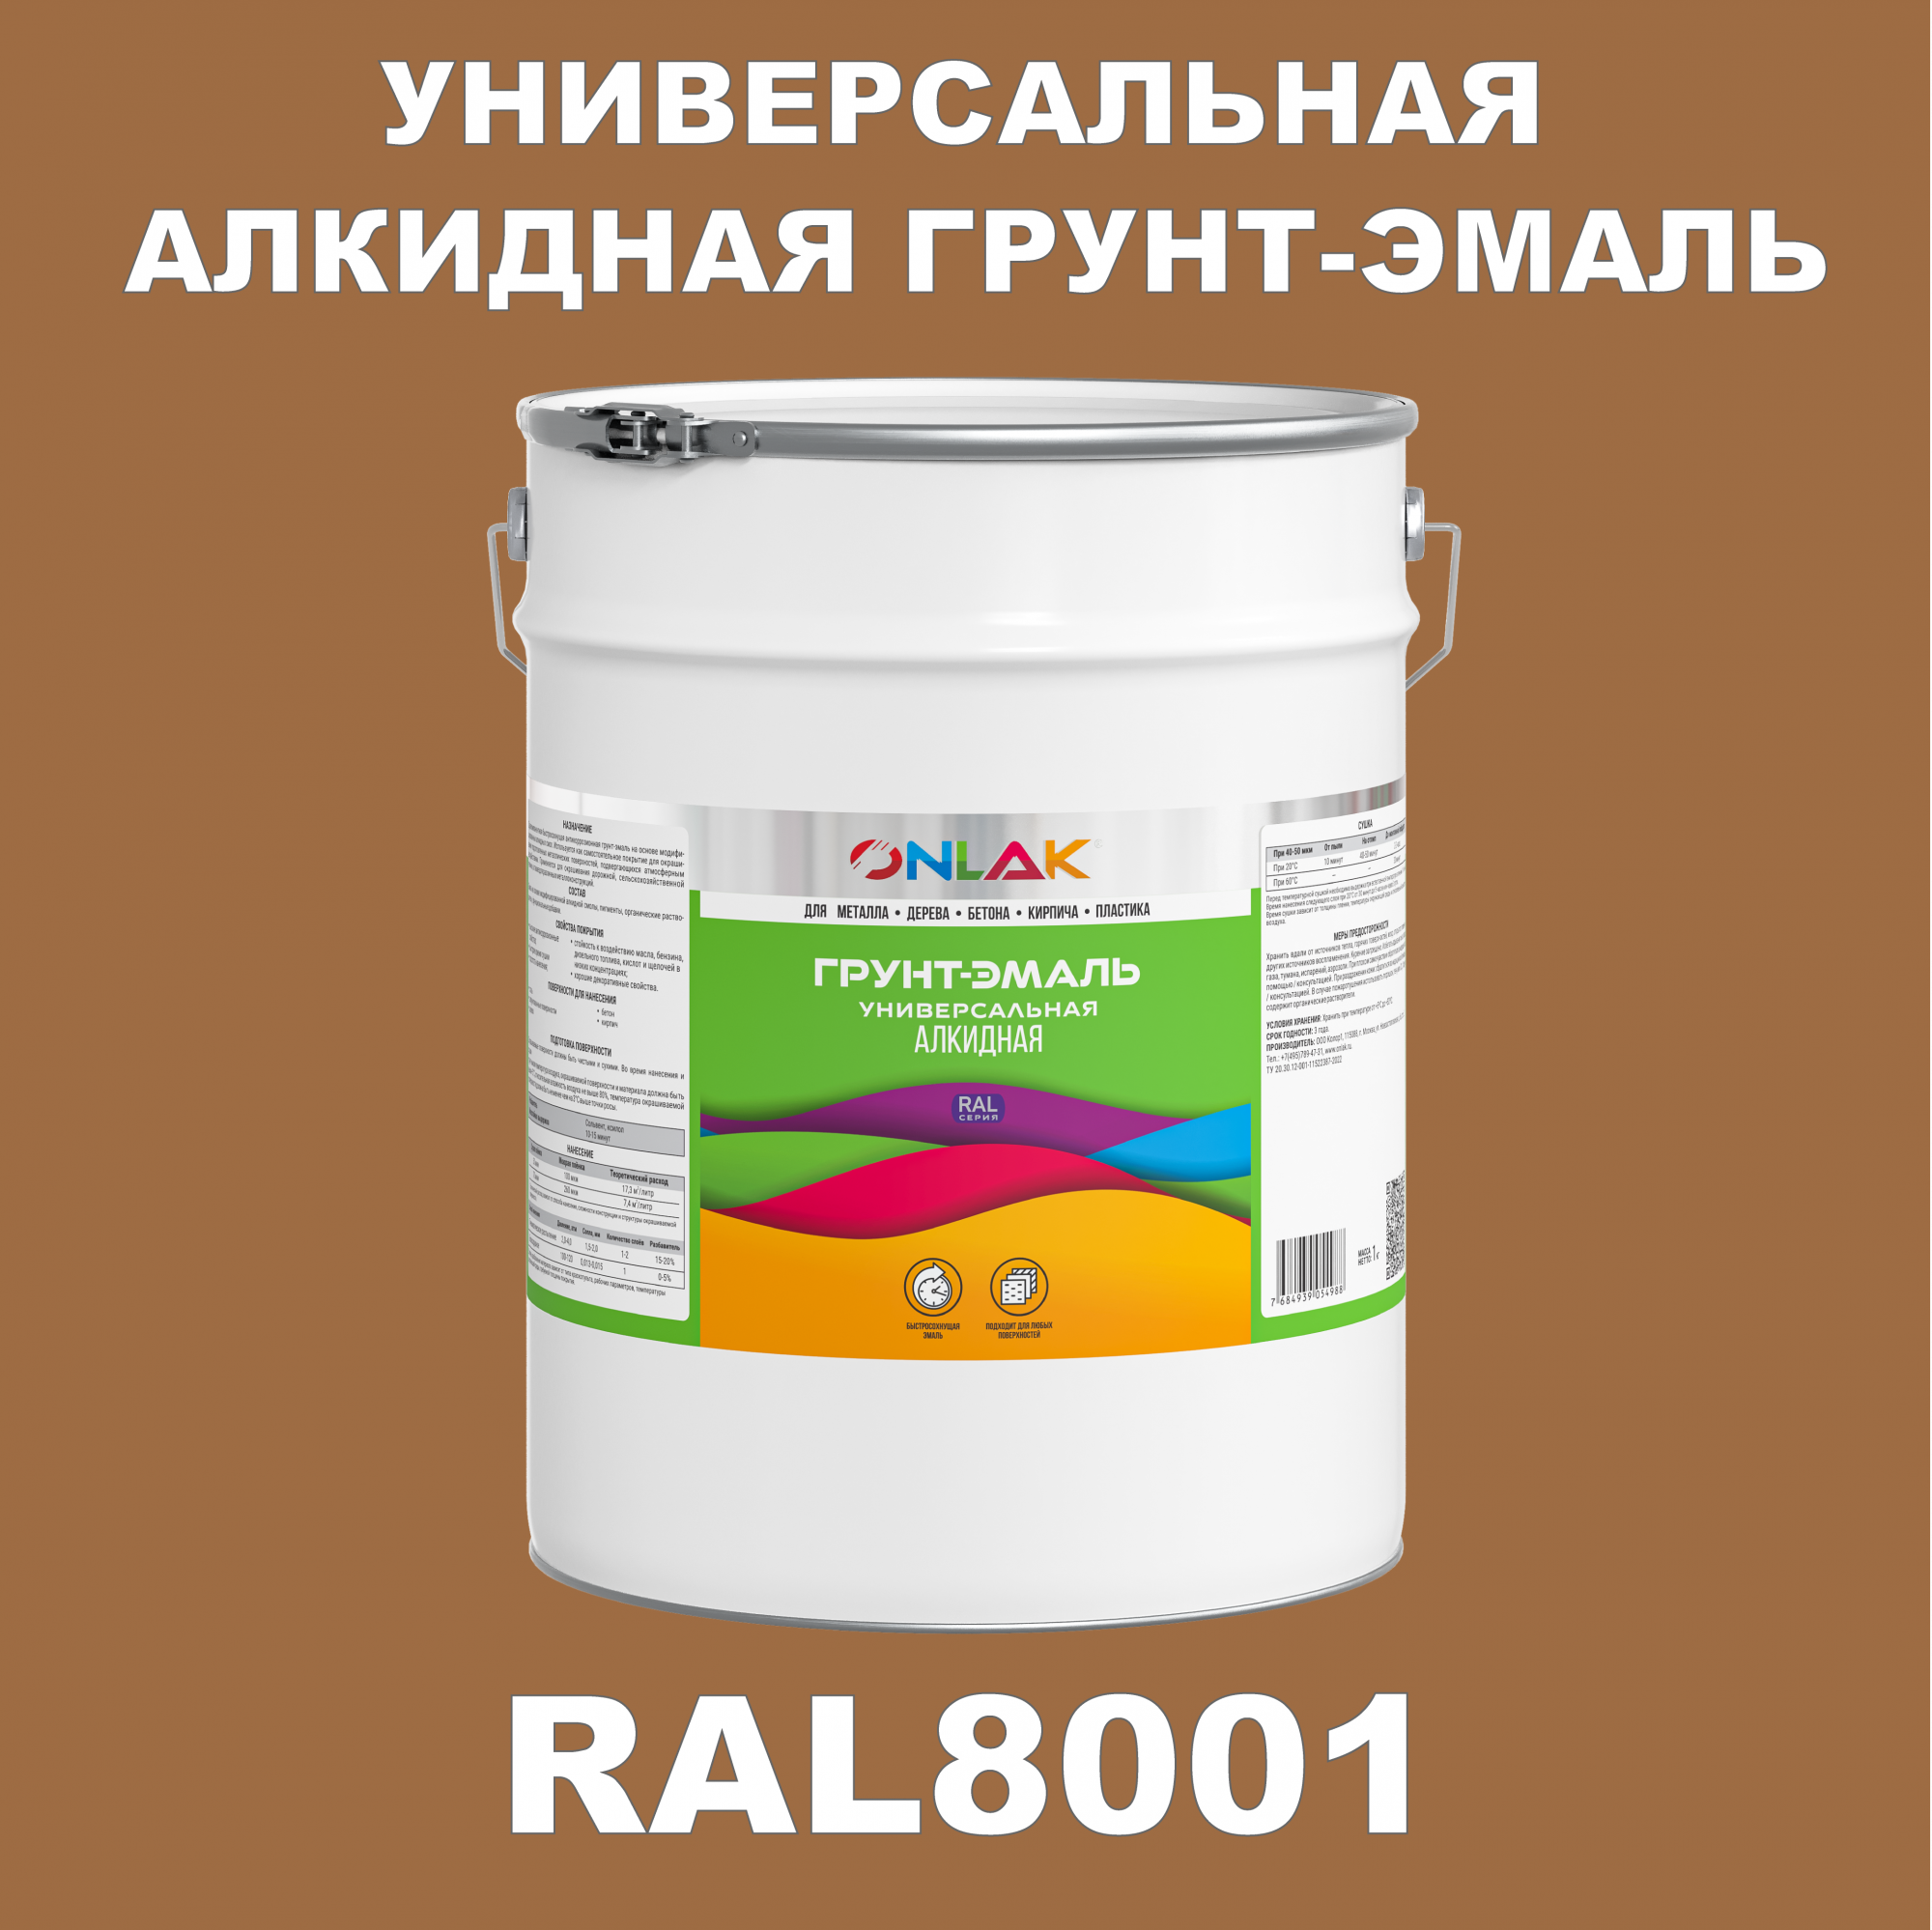 Грунт-эмаль ONLAK 1К RAL8001 антикоррозионная алкидная по металлу по ржавчине 20 кг грунт эмаль престиж по ржавчине алкидная зеленая 1 9 кг